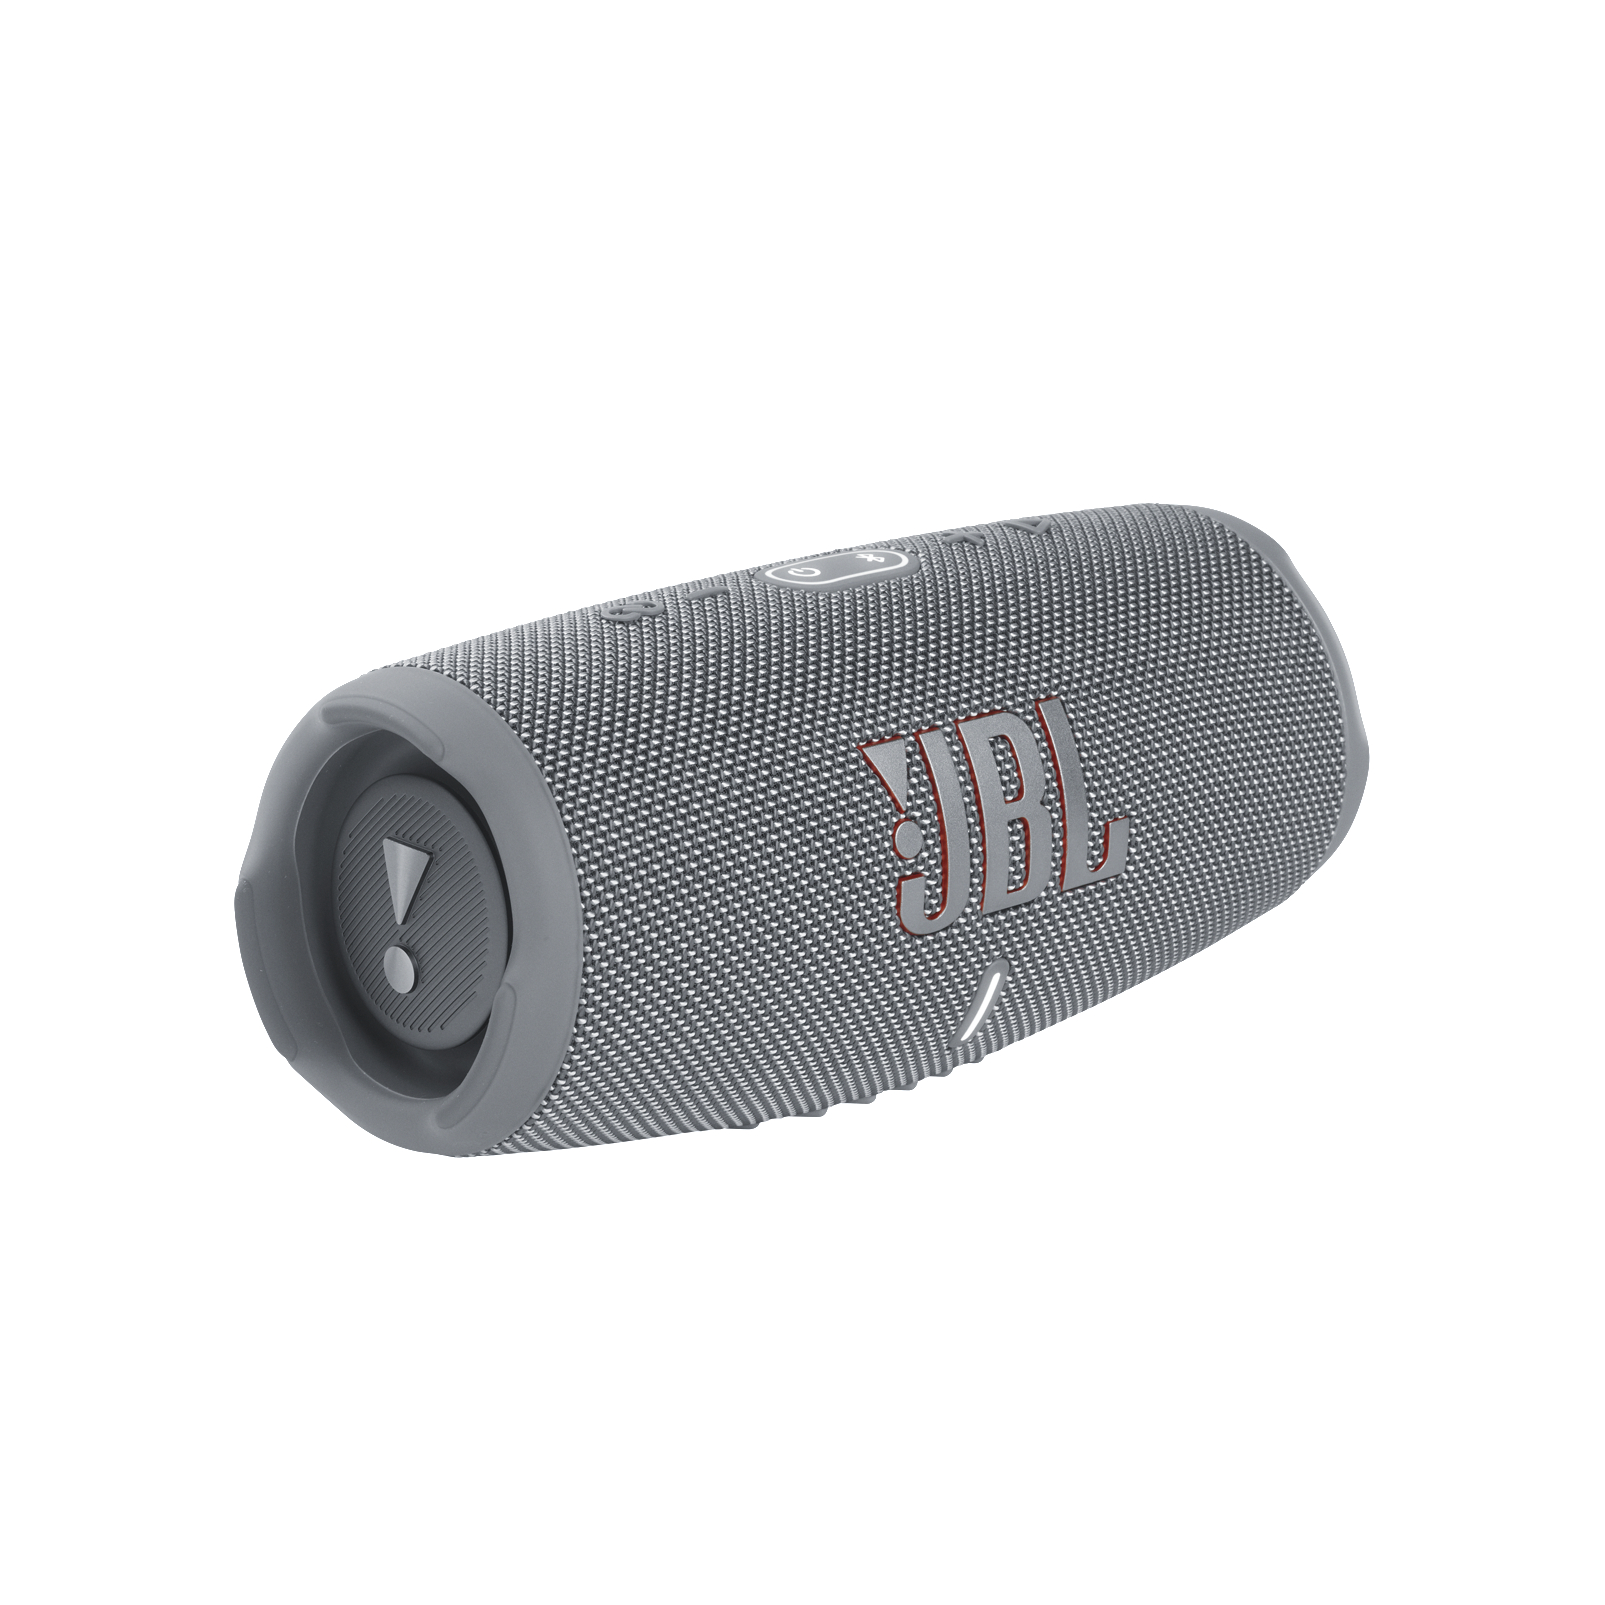 Wasserfest 5 JBL Lautsprecher, Charge Bluetooth Grau,